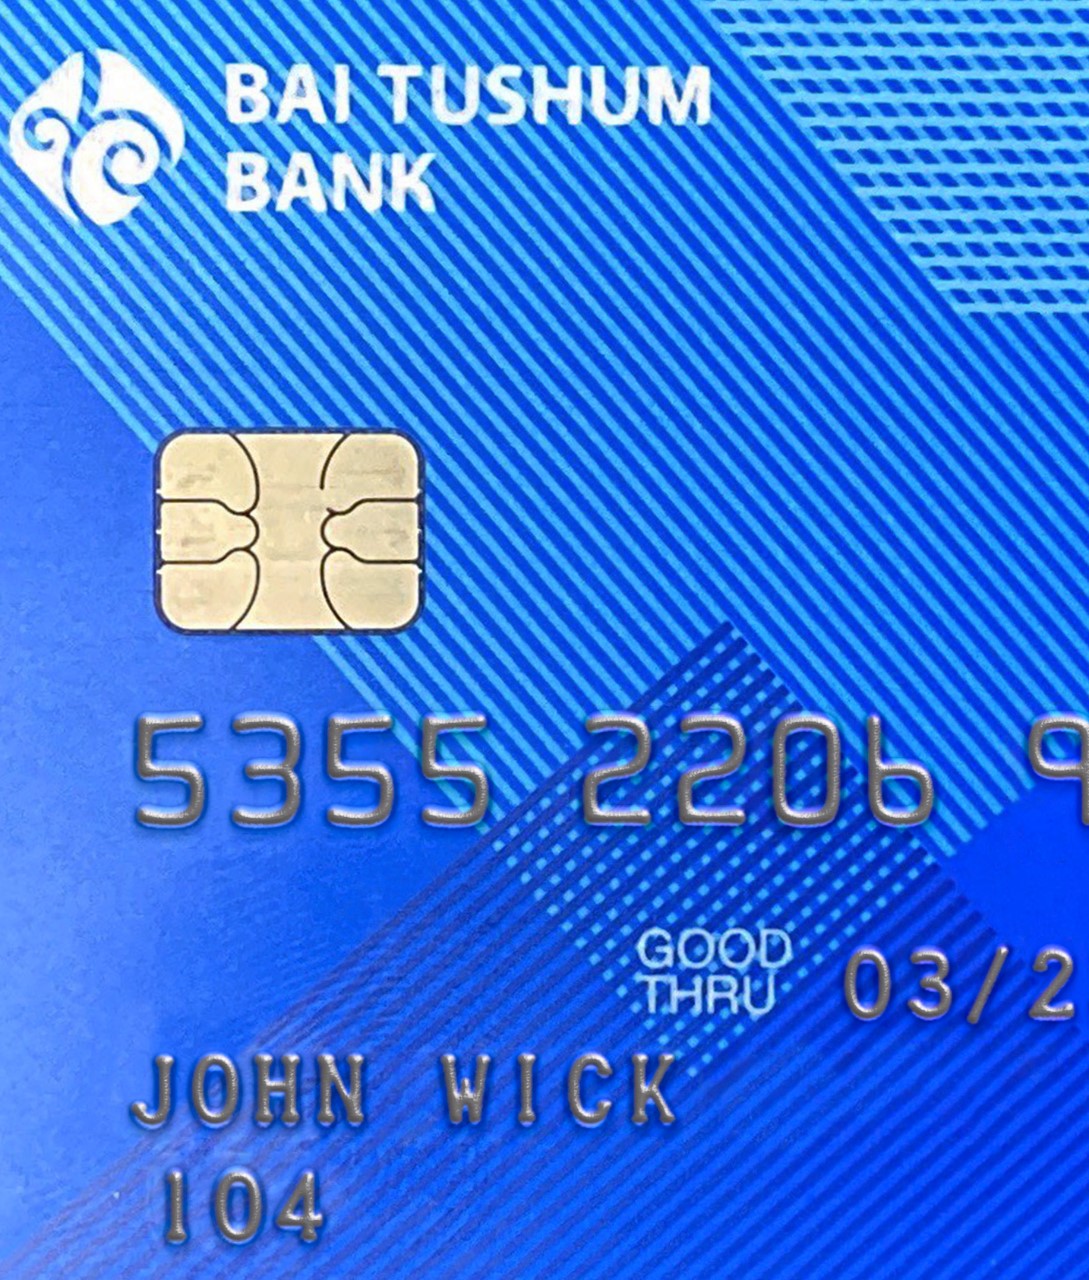 Bai Tushum Bank Credit Card PSD-2